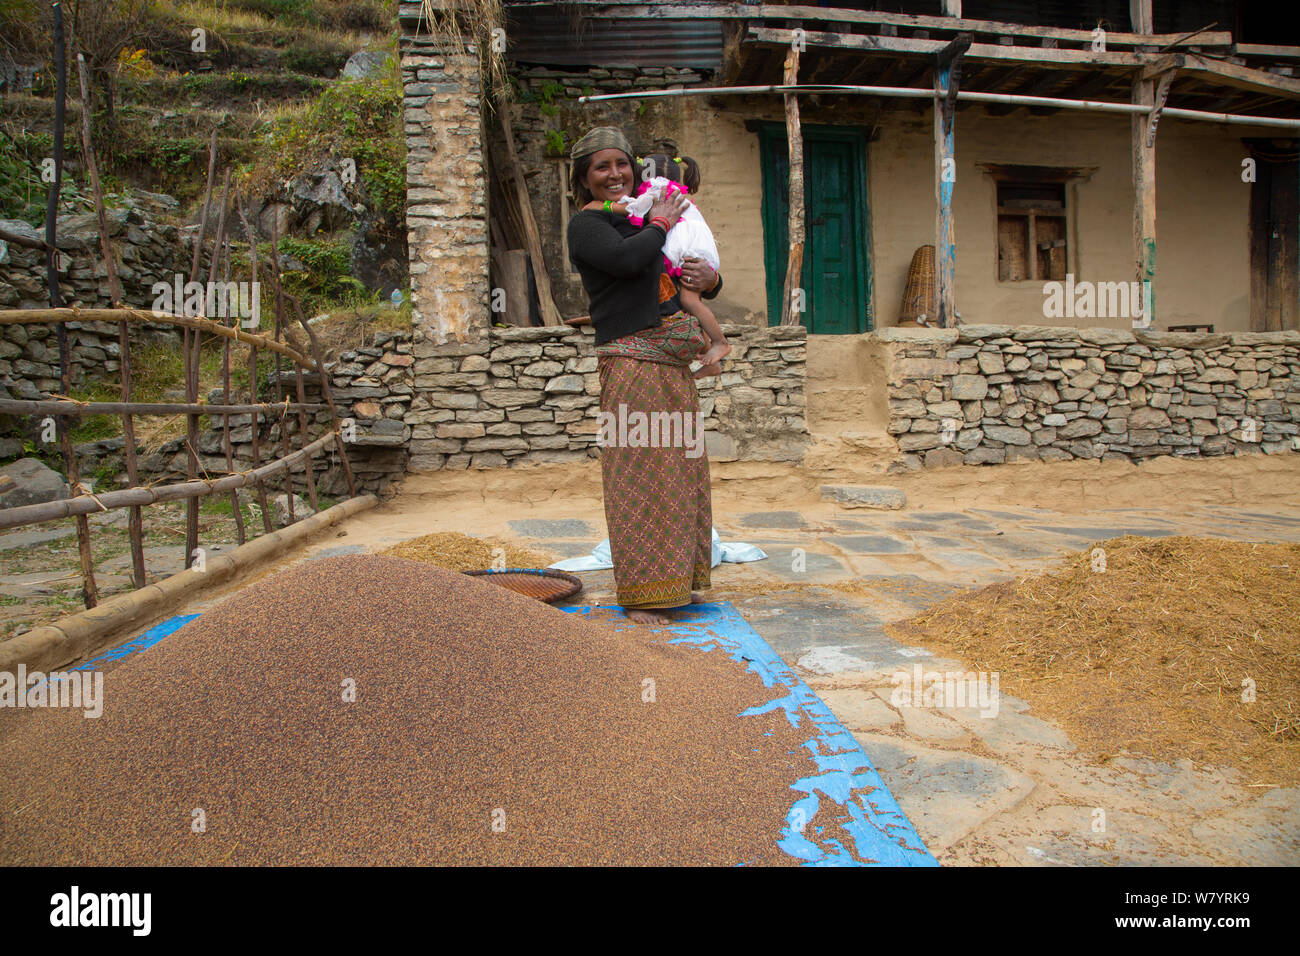 Madre e figlia tra il grano separato dalla pula, nei pressi del villaggio di montagna di Ghandruk, Modi Khola Valley, Himalaya, Nepal. Novembre 2014. Foto Stock